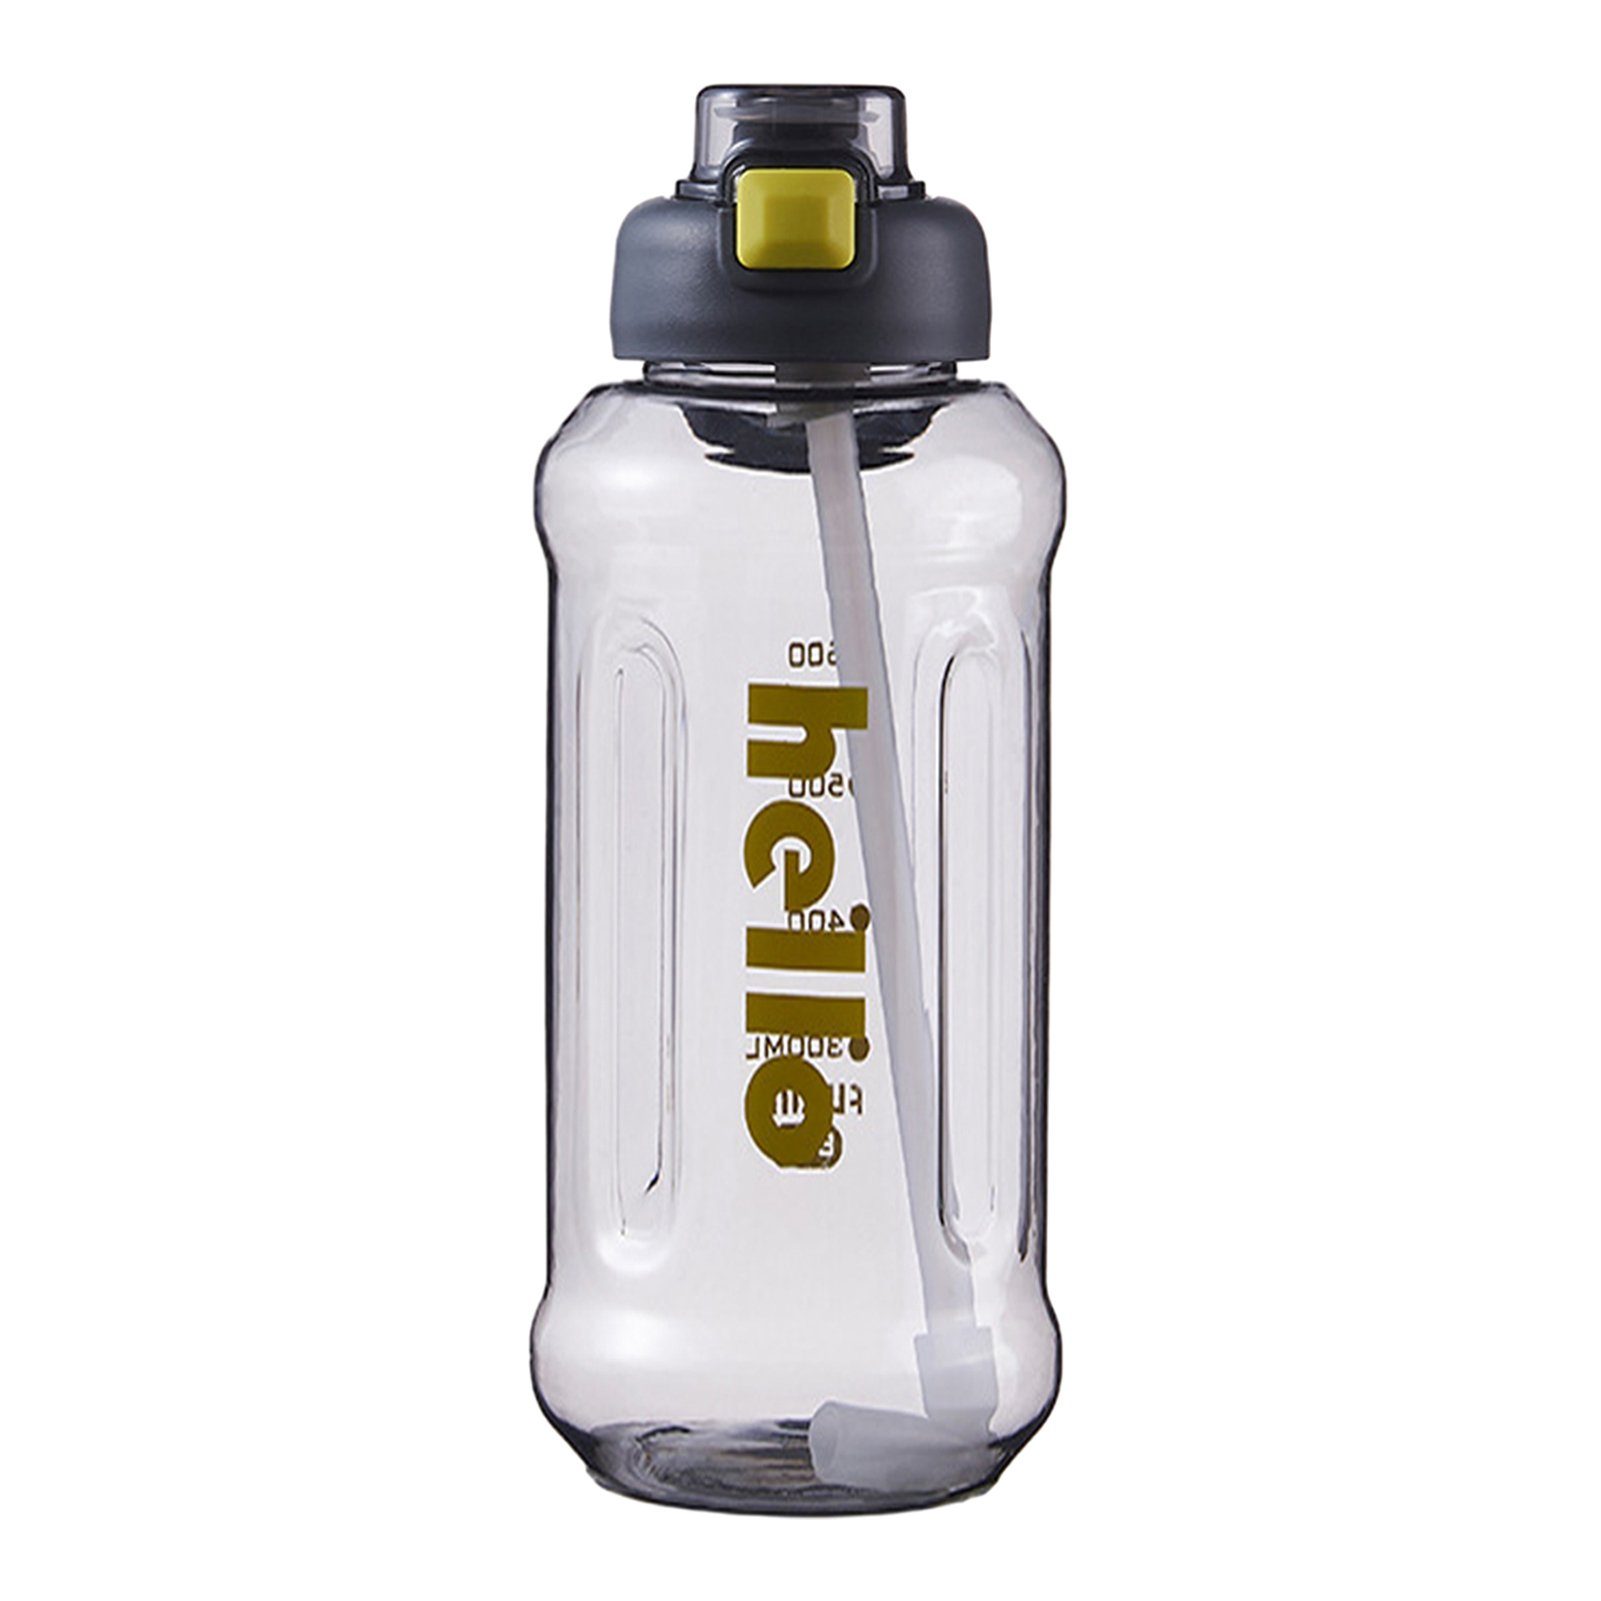 Blusmart Trinkflasche Tragbarer Stroh-Wasserbecher Mit Griff, Hoher Kapazität, Versiegelter, Trinkflasche dark grey 1300ml